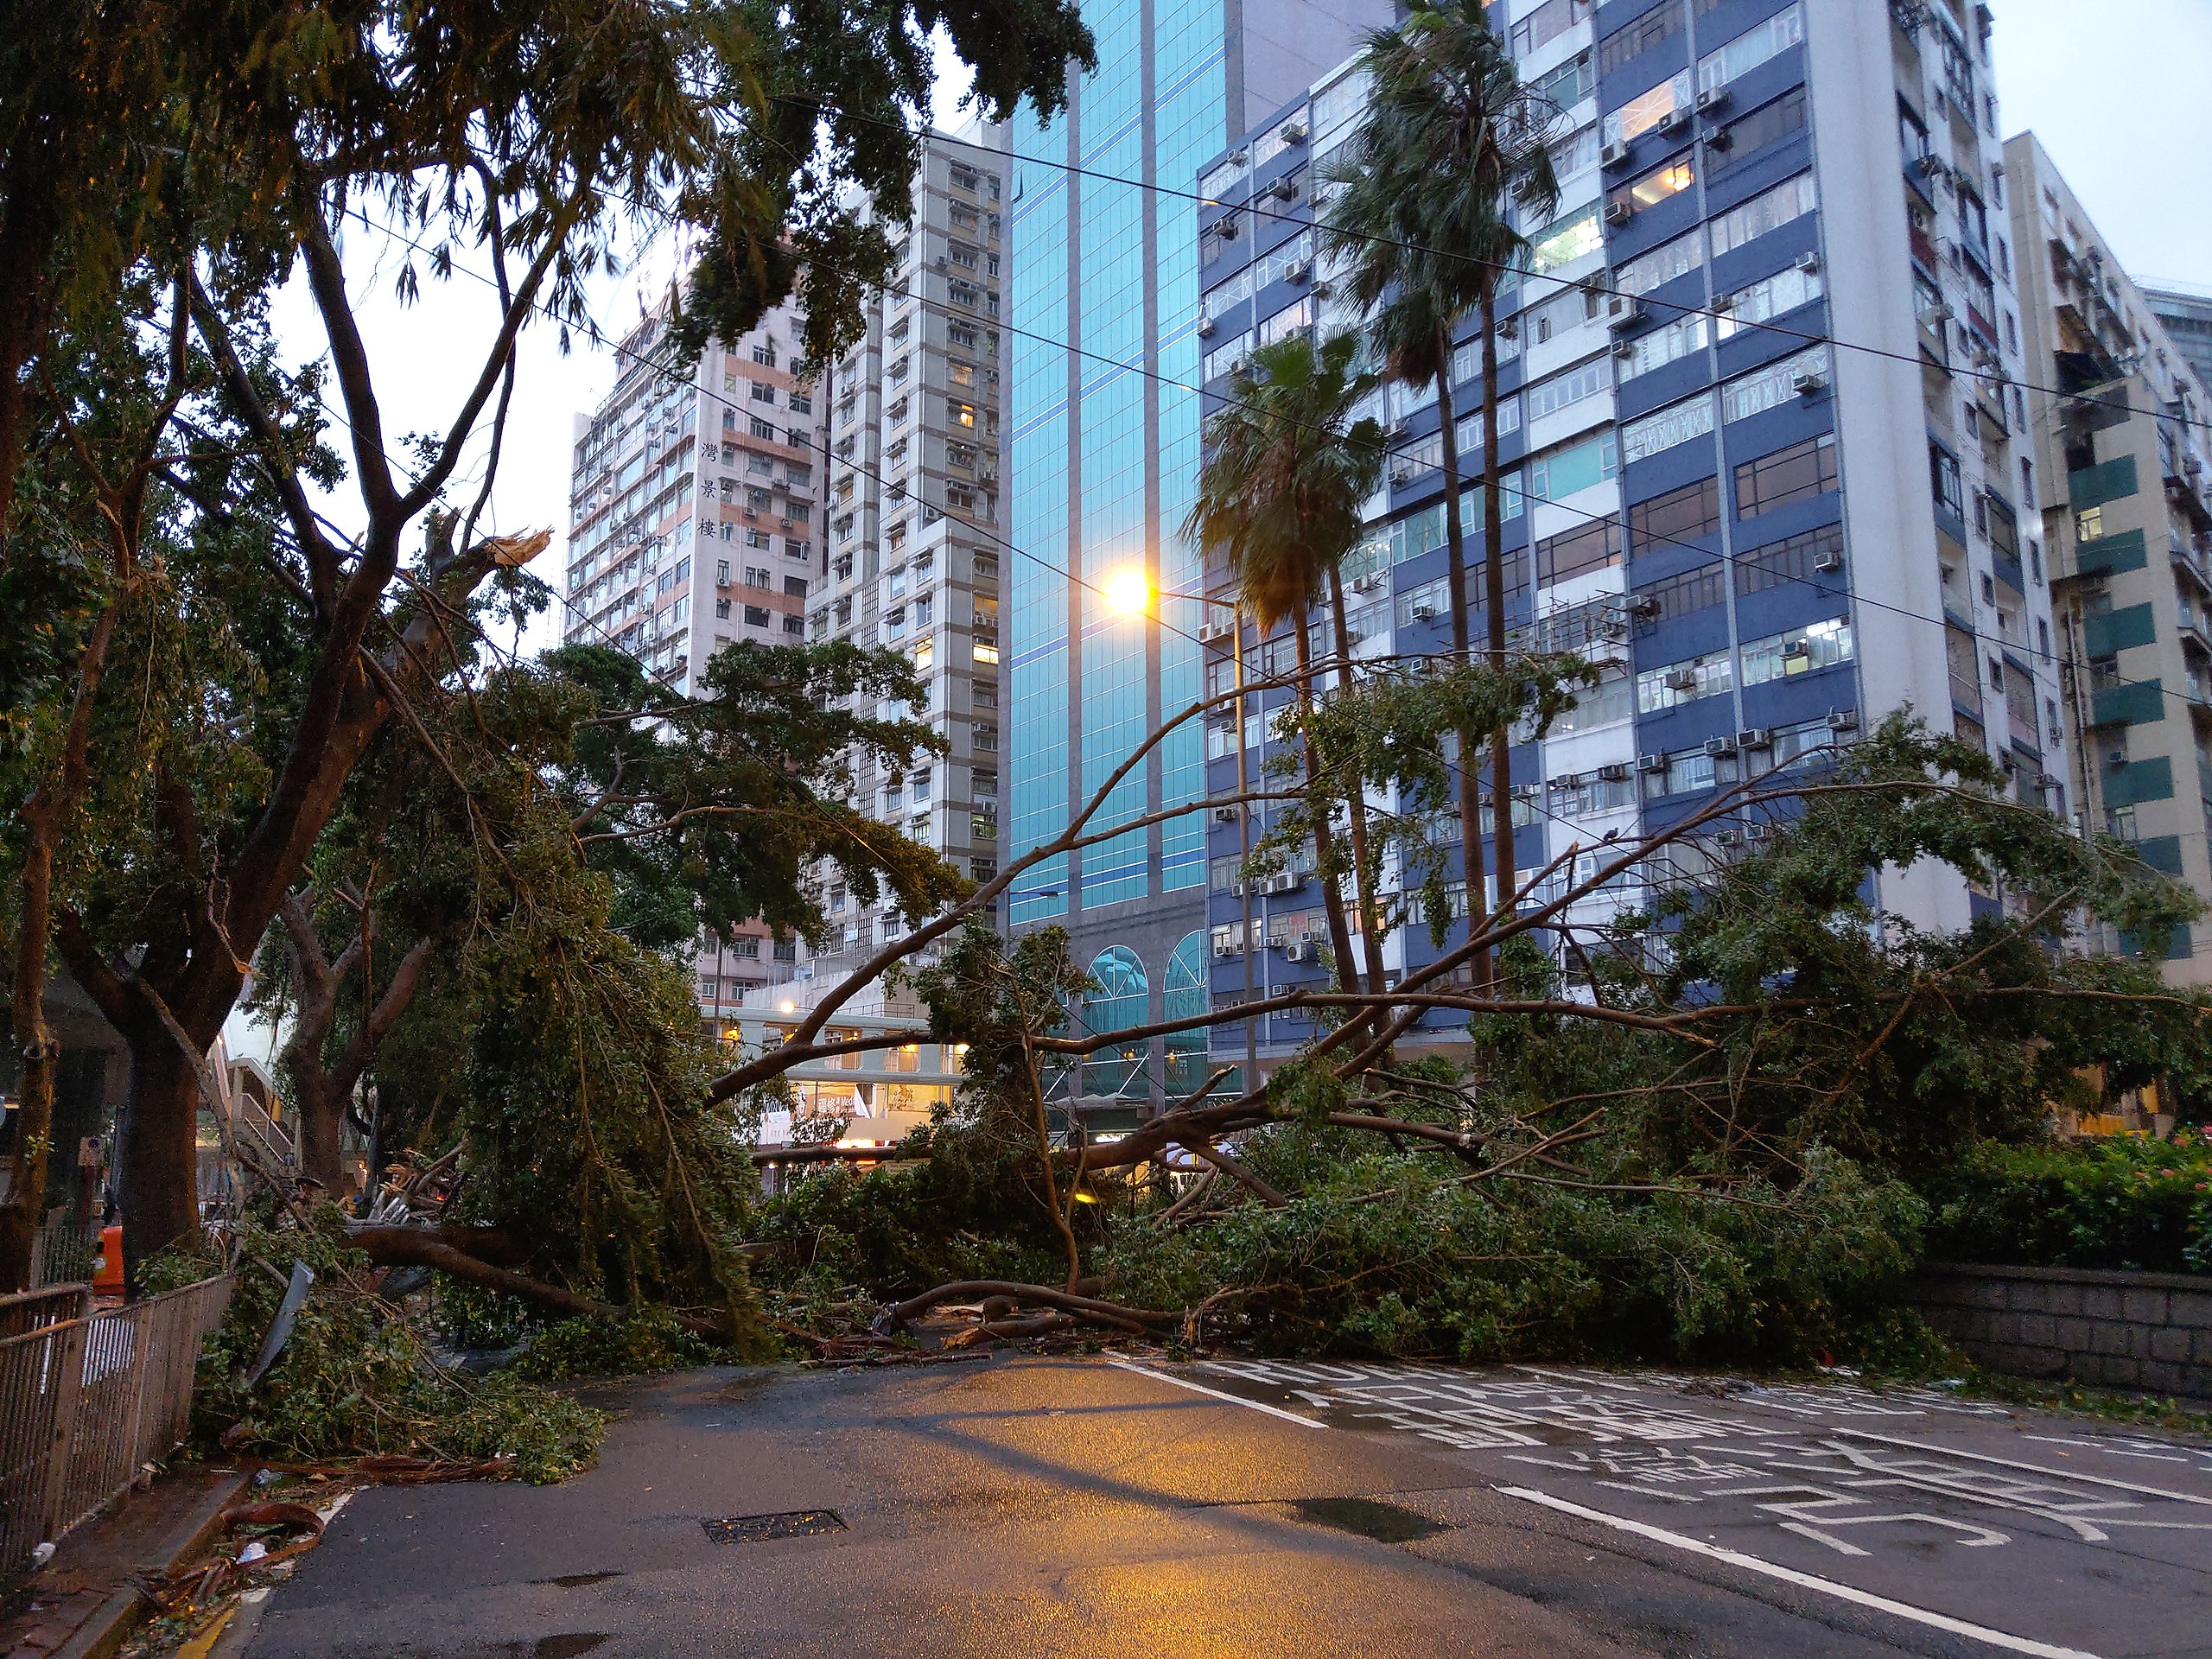 Fallen trees block the road in Causeway Bay after Typhoon Mangkhut struck Hong Kong.